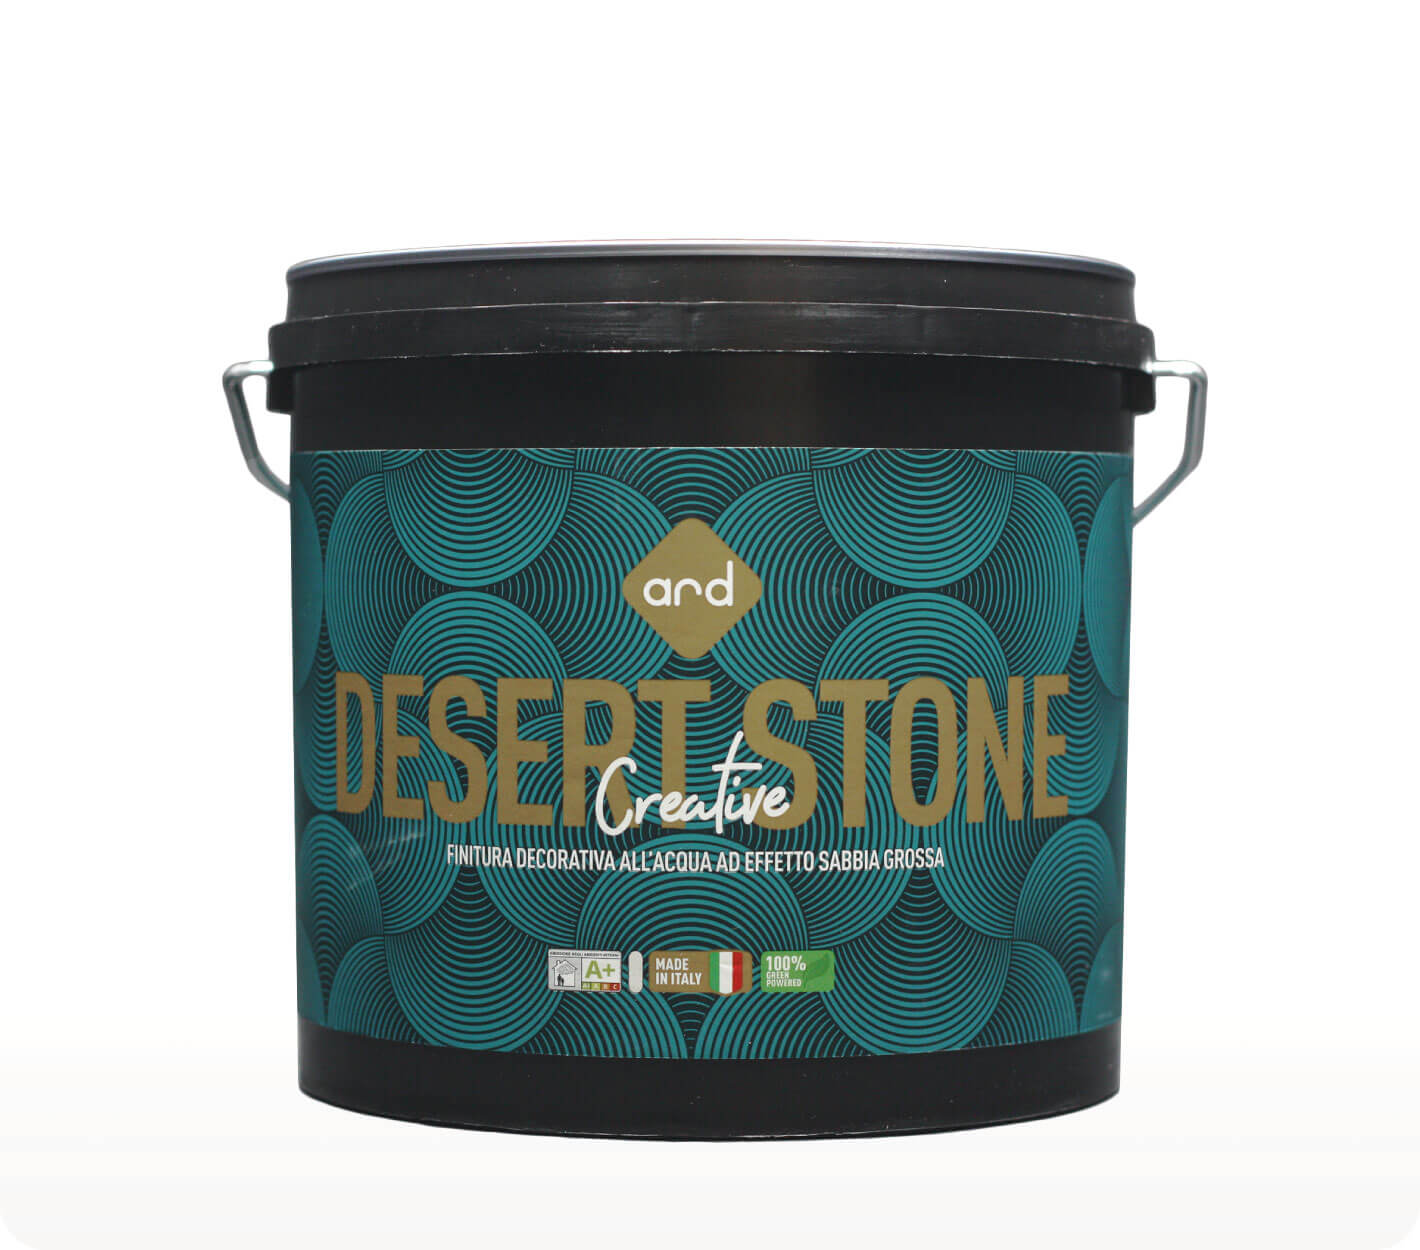 Creative Desert Stone - pittura decorativa effetto sabbia - Ard Raccanello